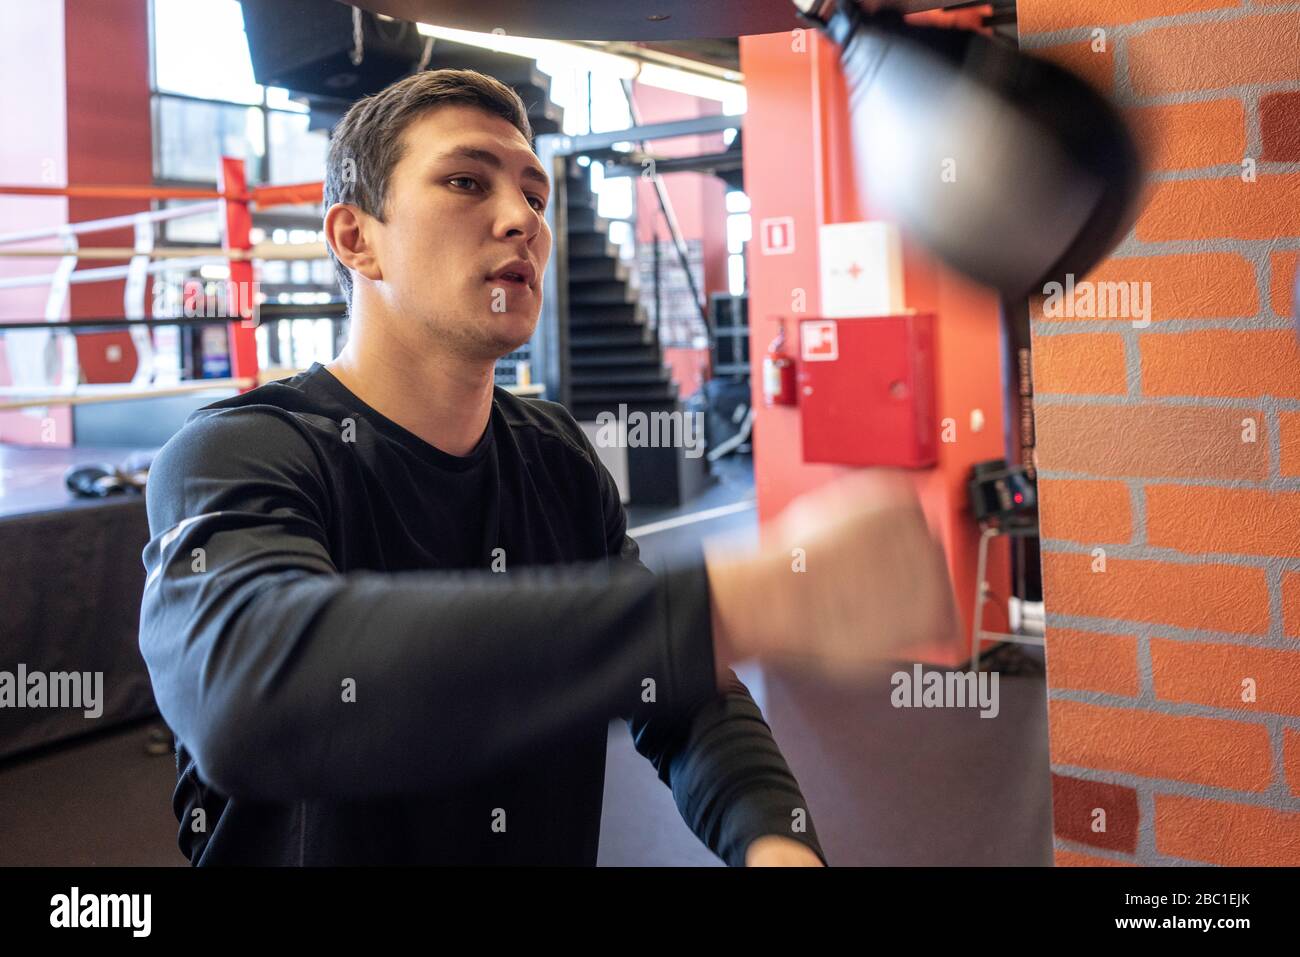 Junger Mann, der im Boxclub bei der Schlagsackübung trainiert Stockfoto